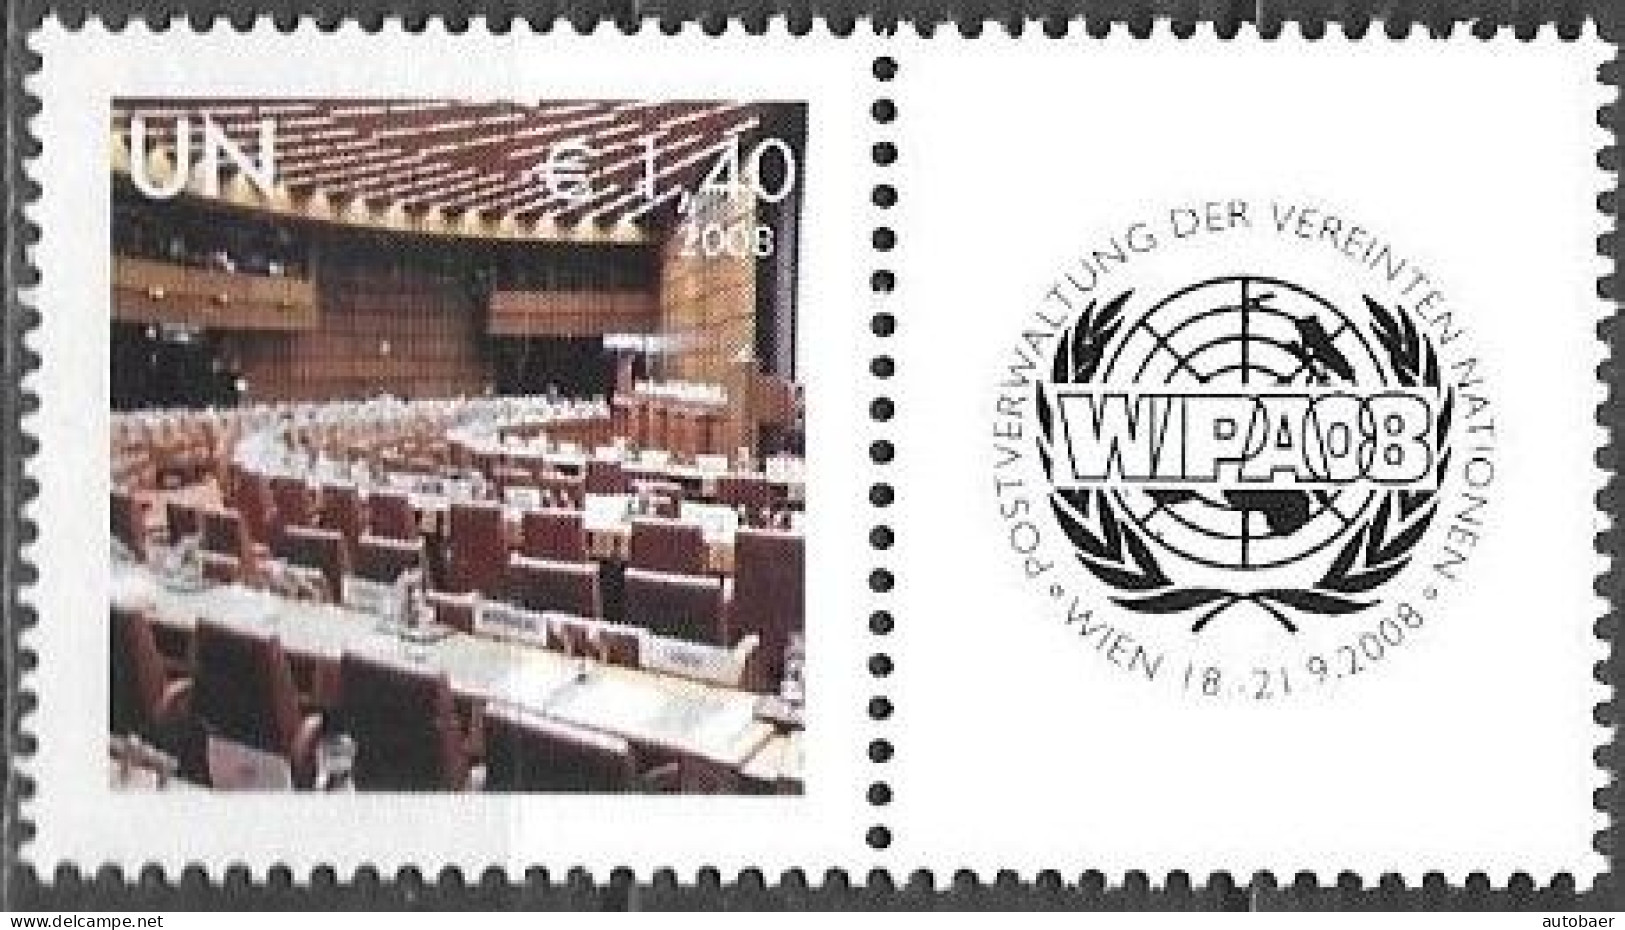 United Nations UNO UN Vereinte Nationen Vienna Wien 2008 Stamp Exhibition WIPA Briefmarken Ausstellung Mi. 554 MNH ** - Ungebraucht